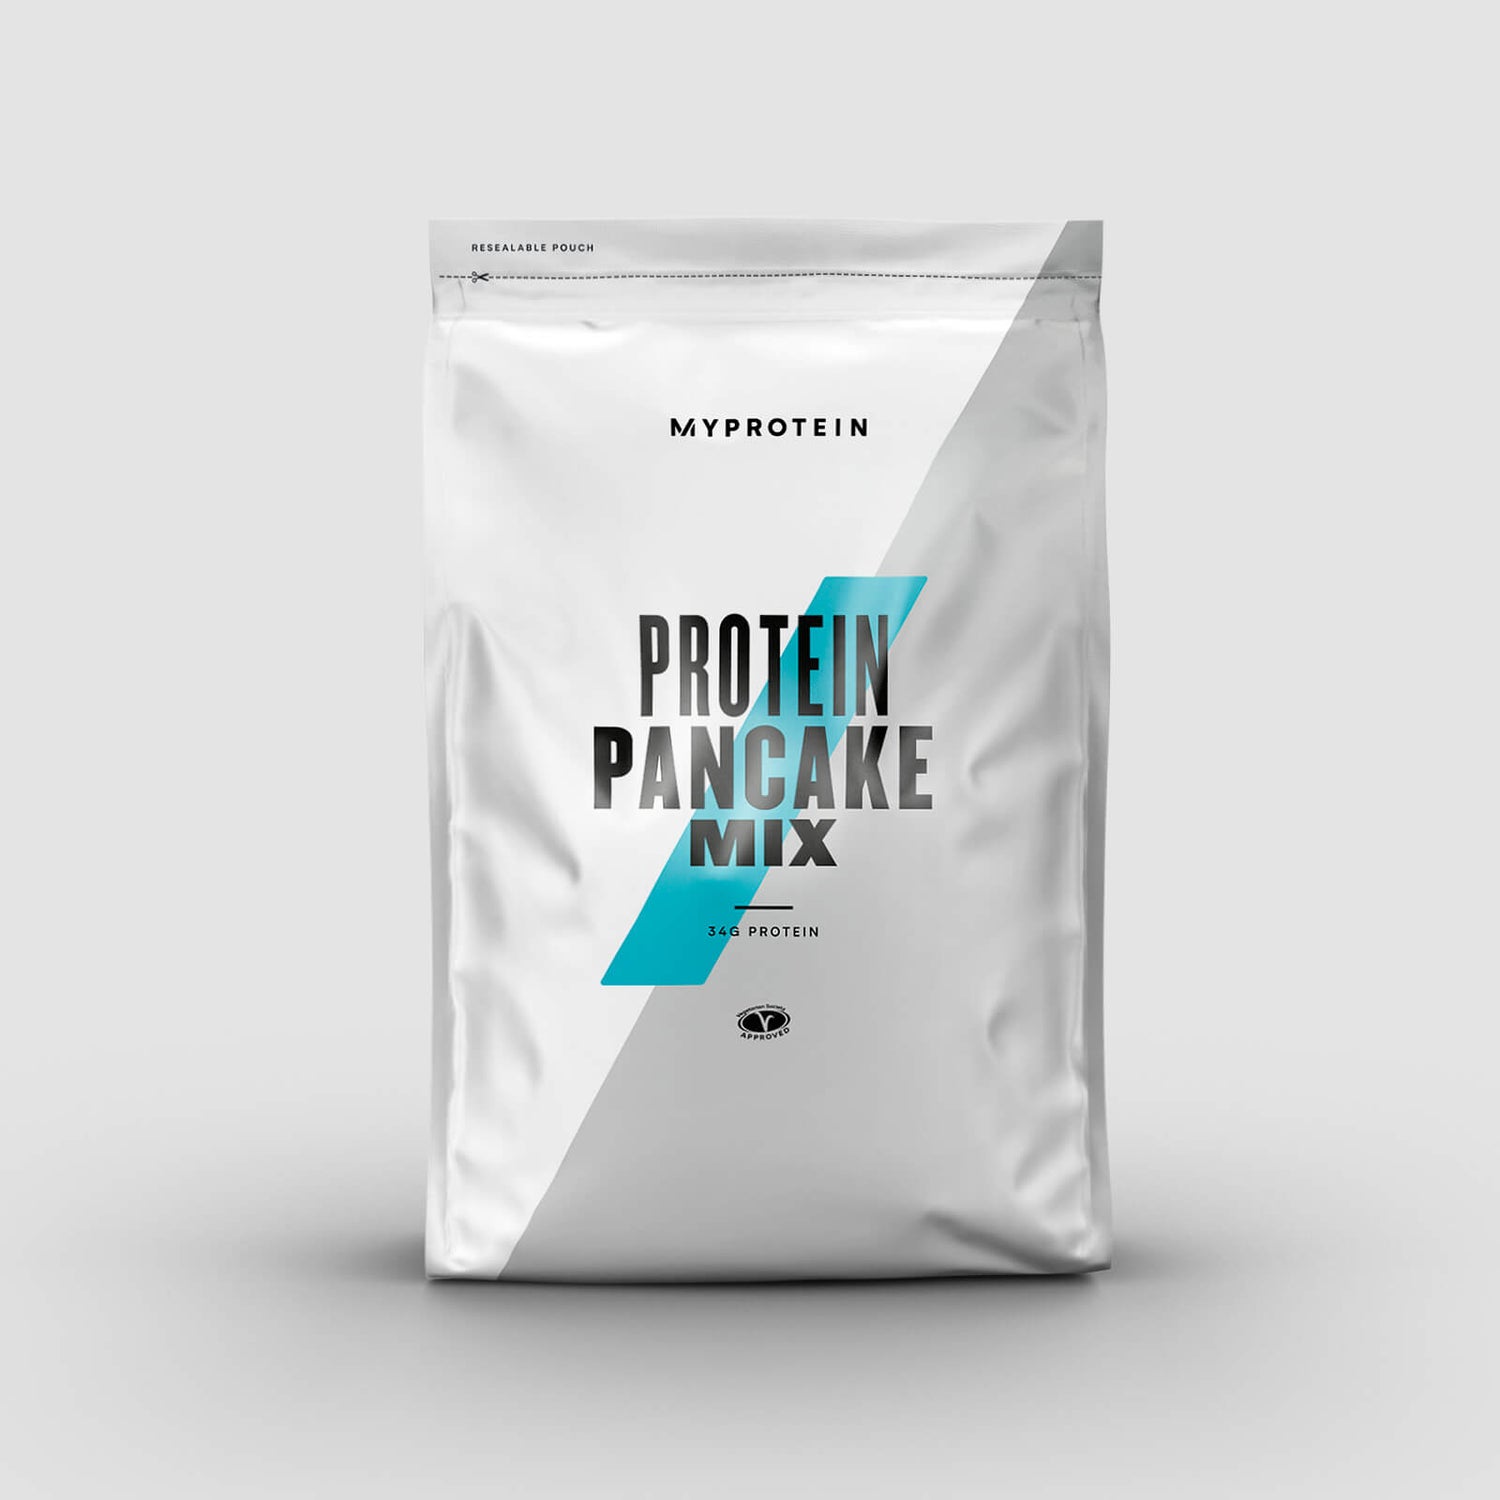 Protein Pancake Mix - 200g - Blueberry